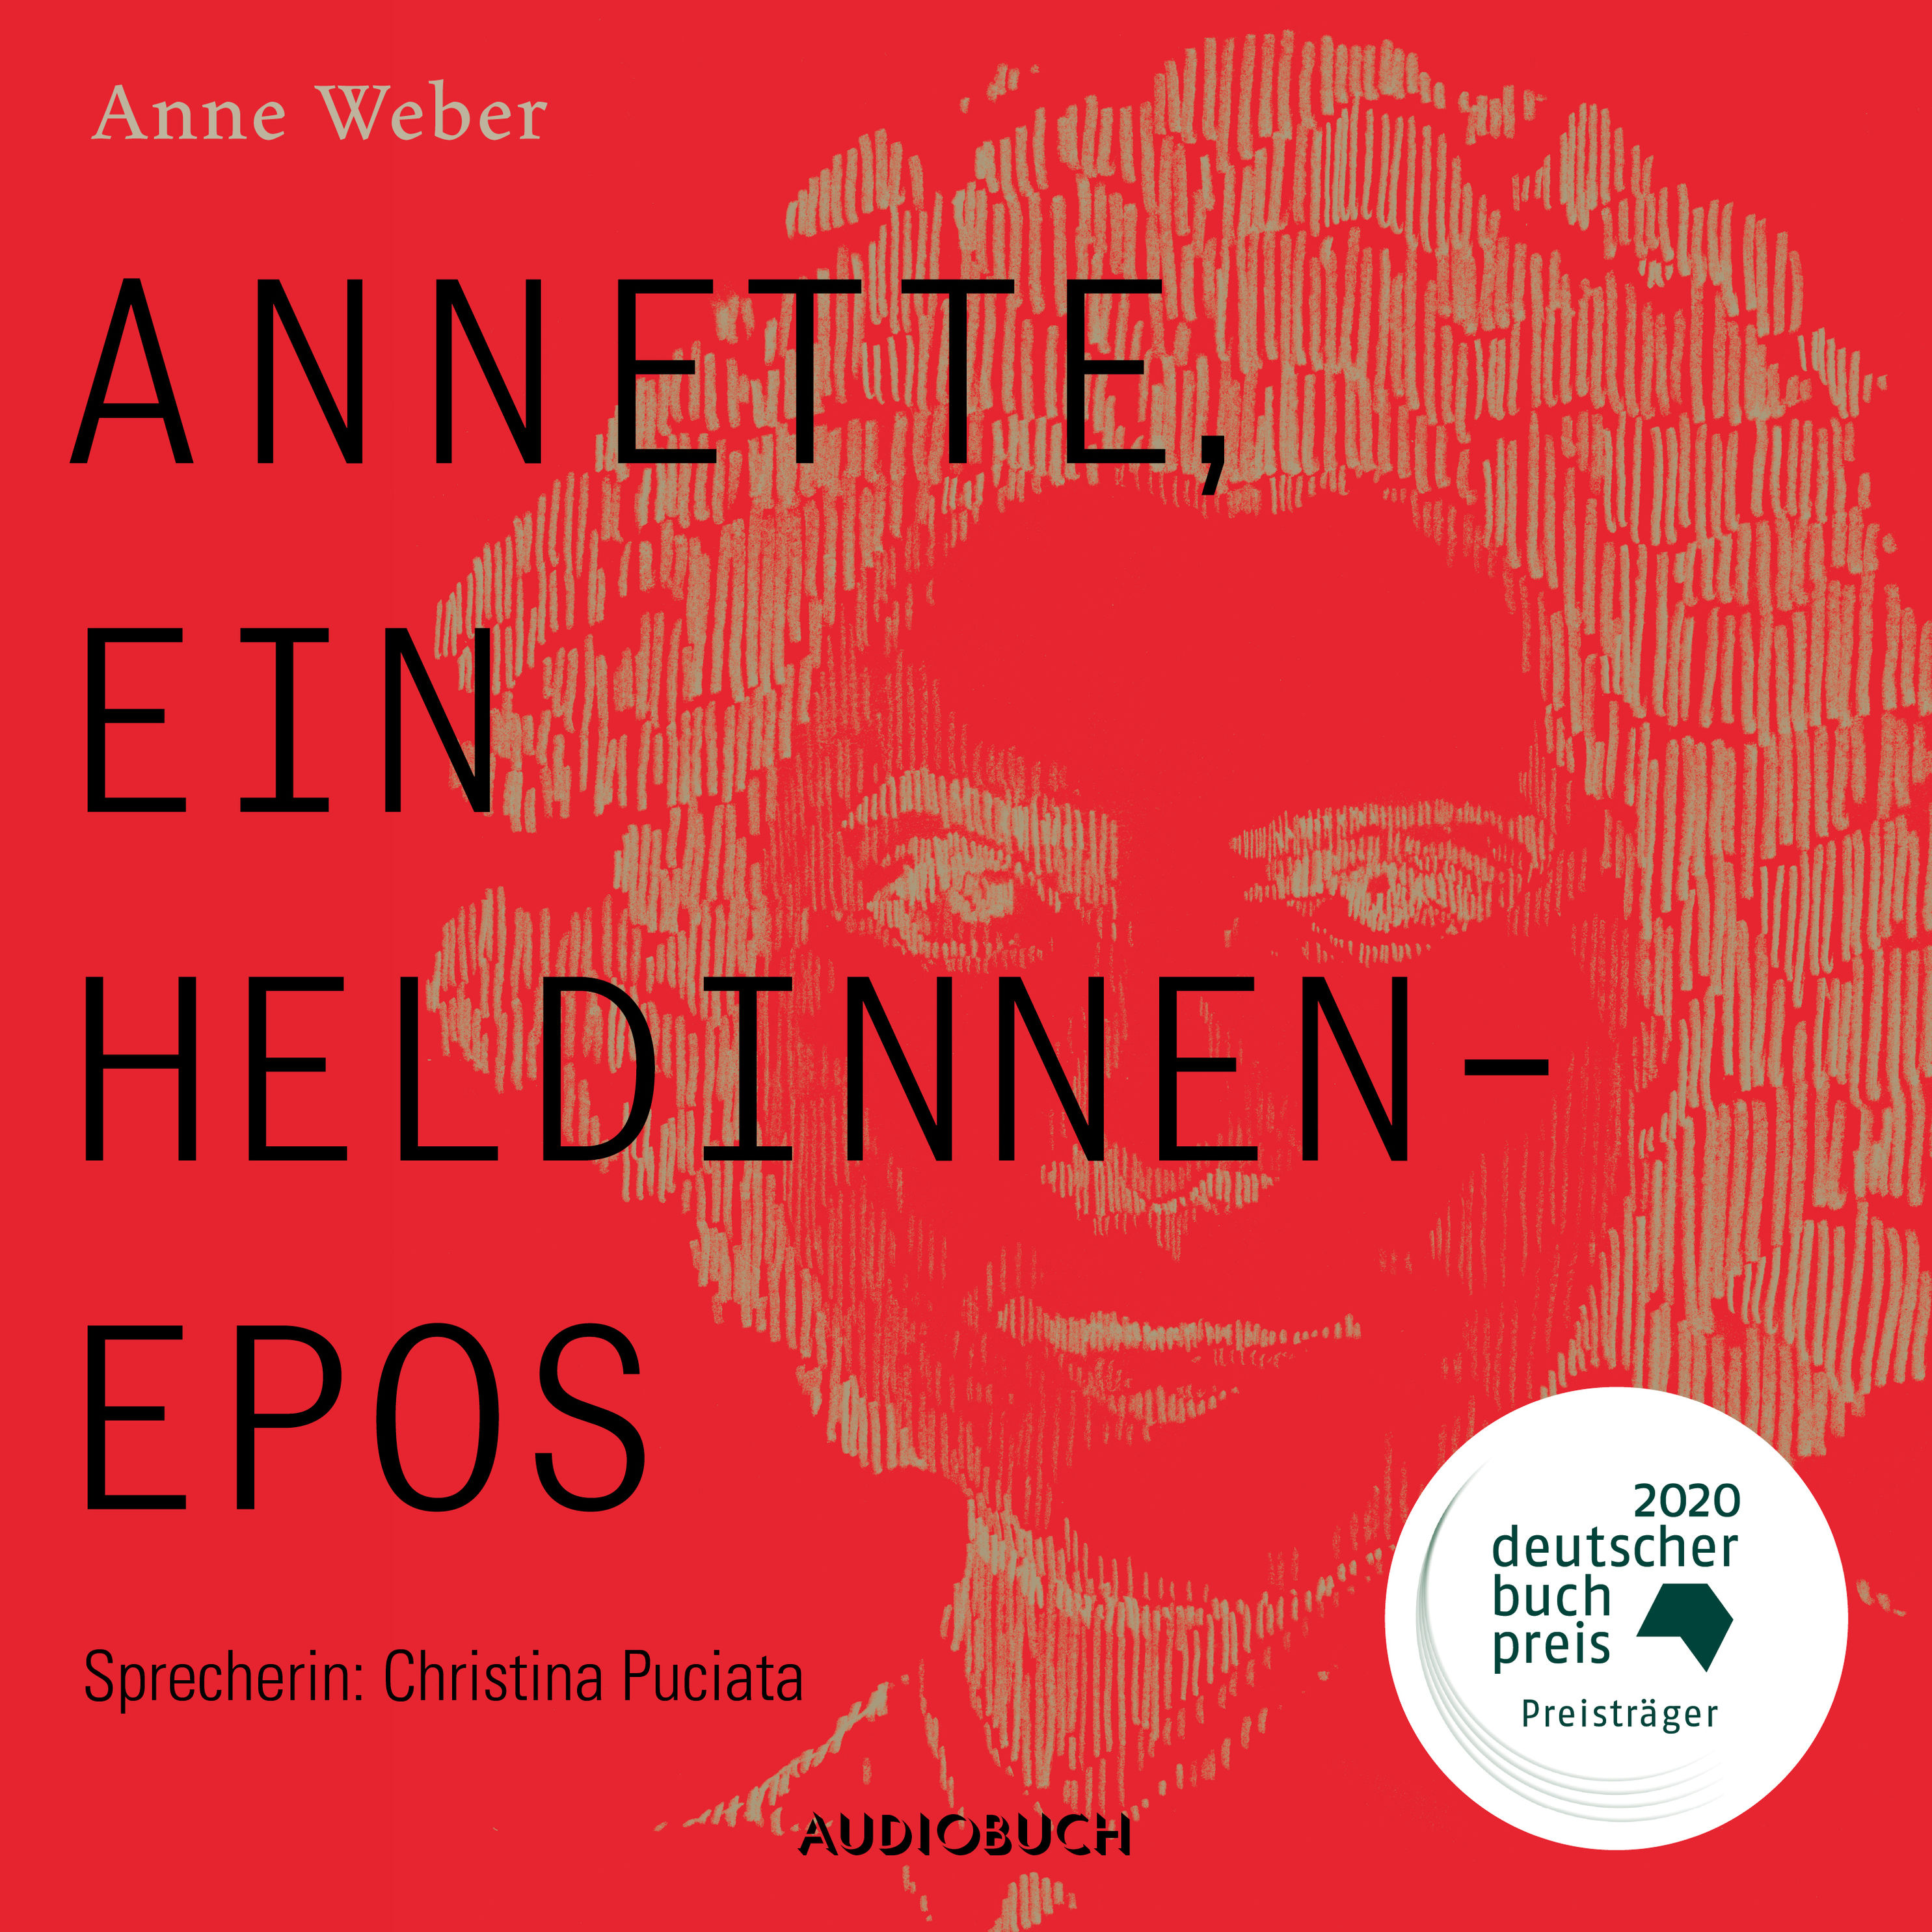 Annette, ein Heldinnenepos ungekürzt Hörbuch Download | Weltbild